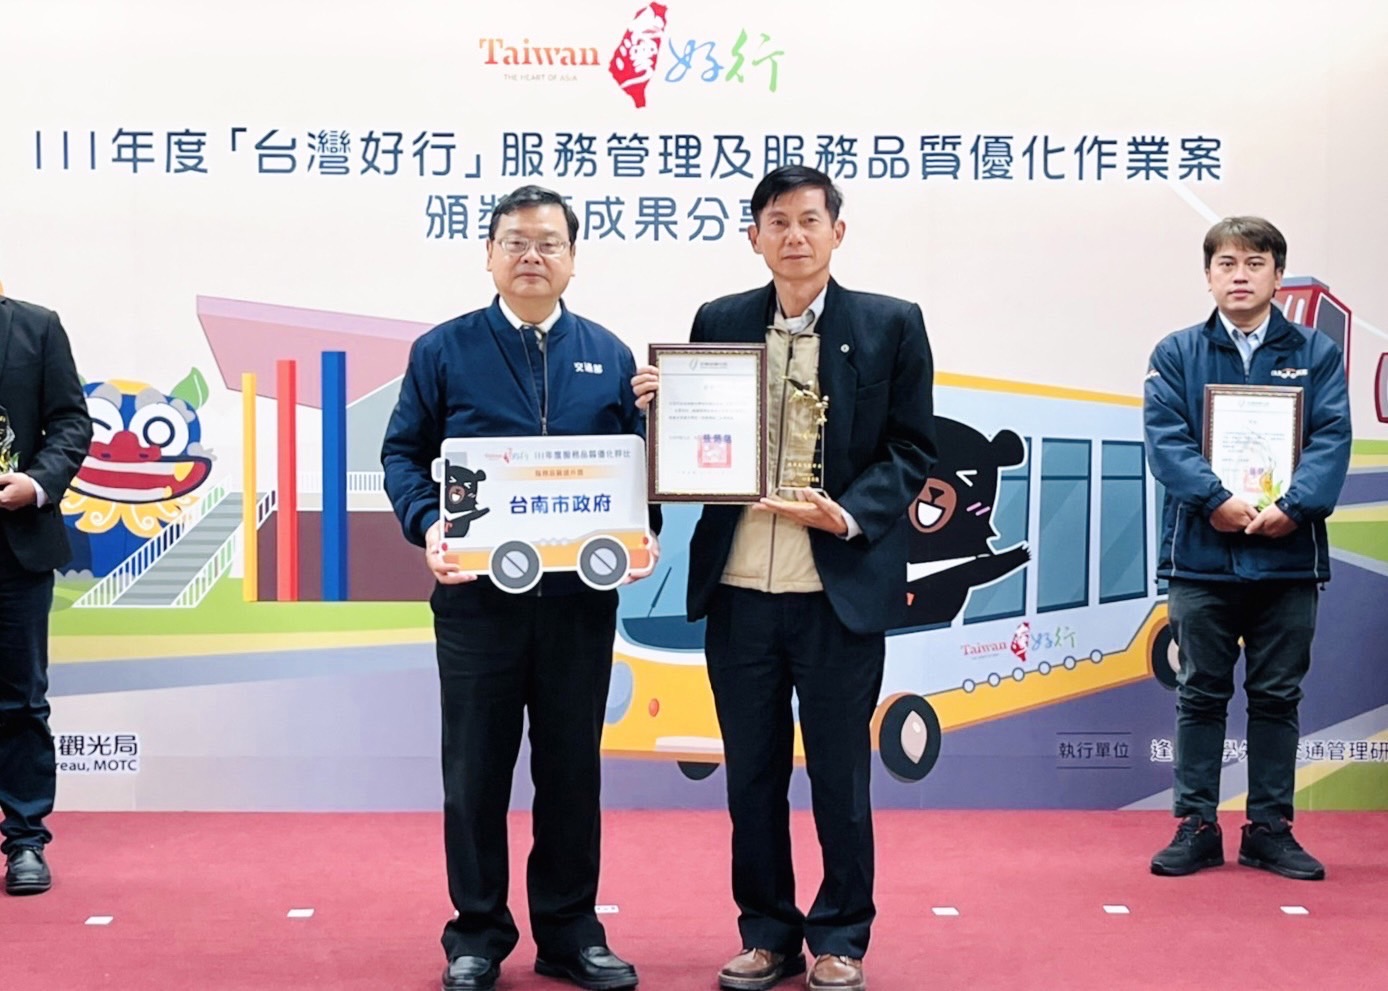 台南榮獲「111年度台灣好行」路線評比優等及全國唯一「服務品質提升獎」